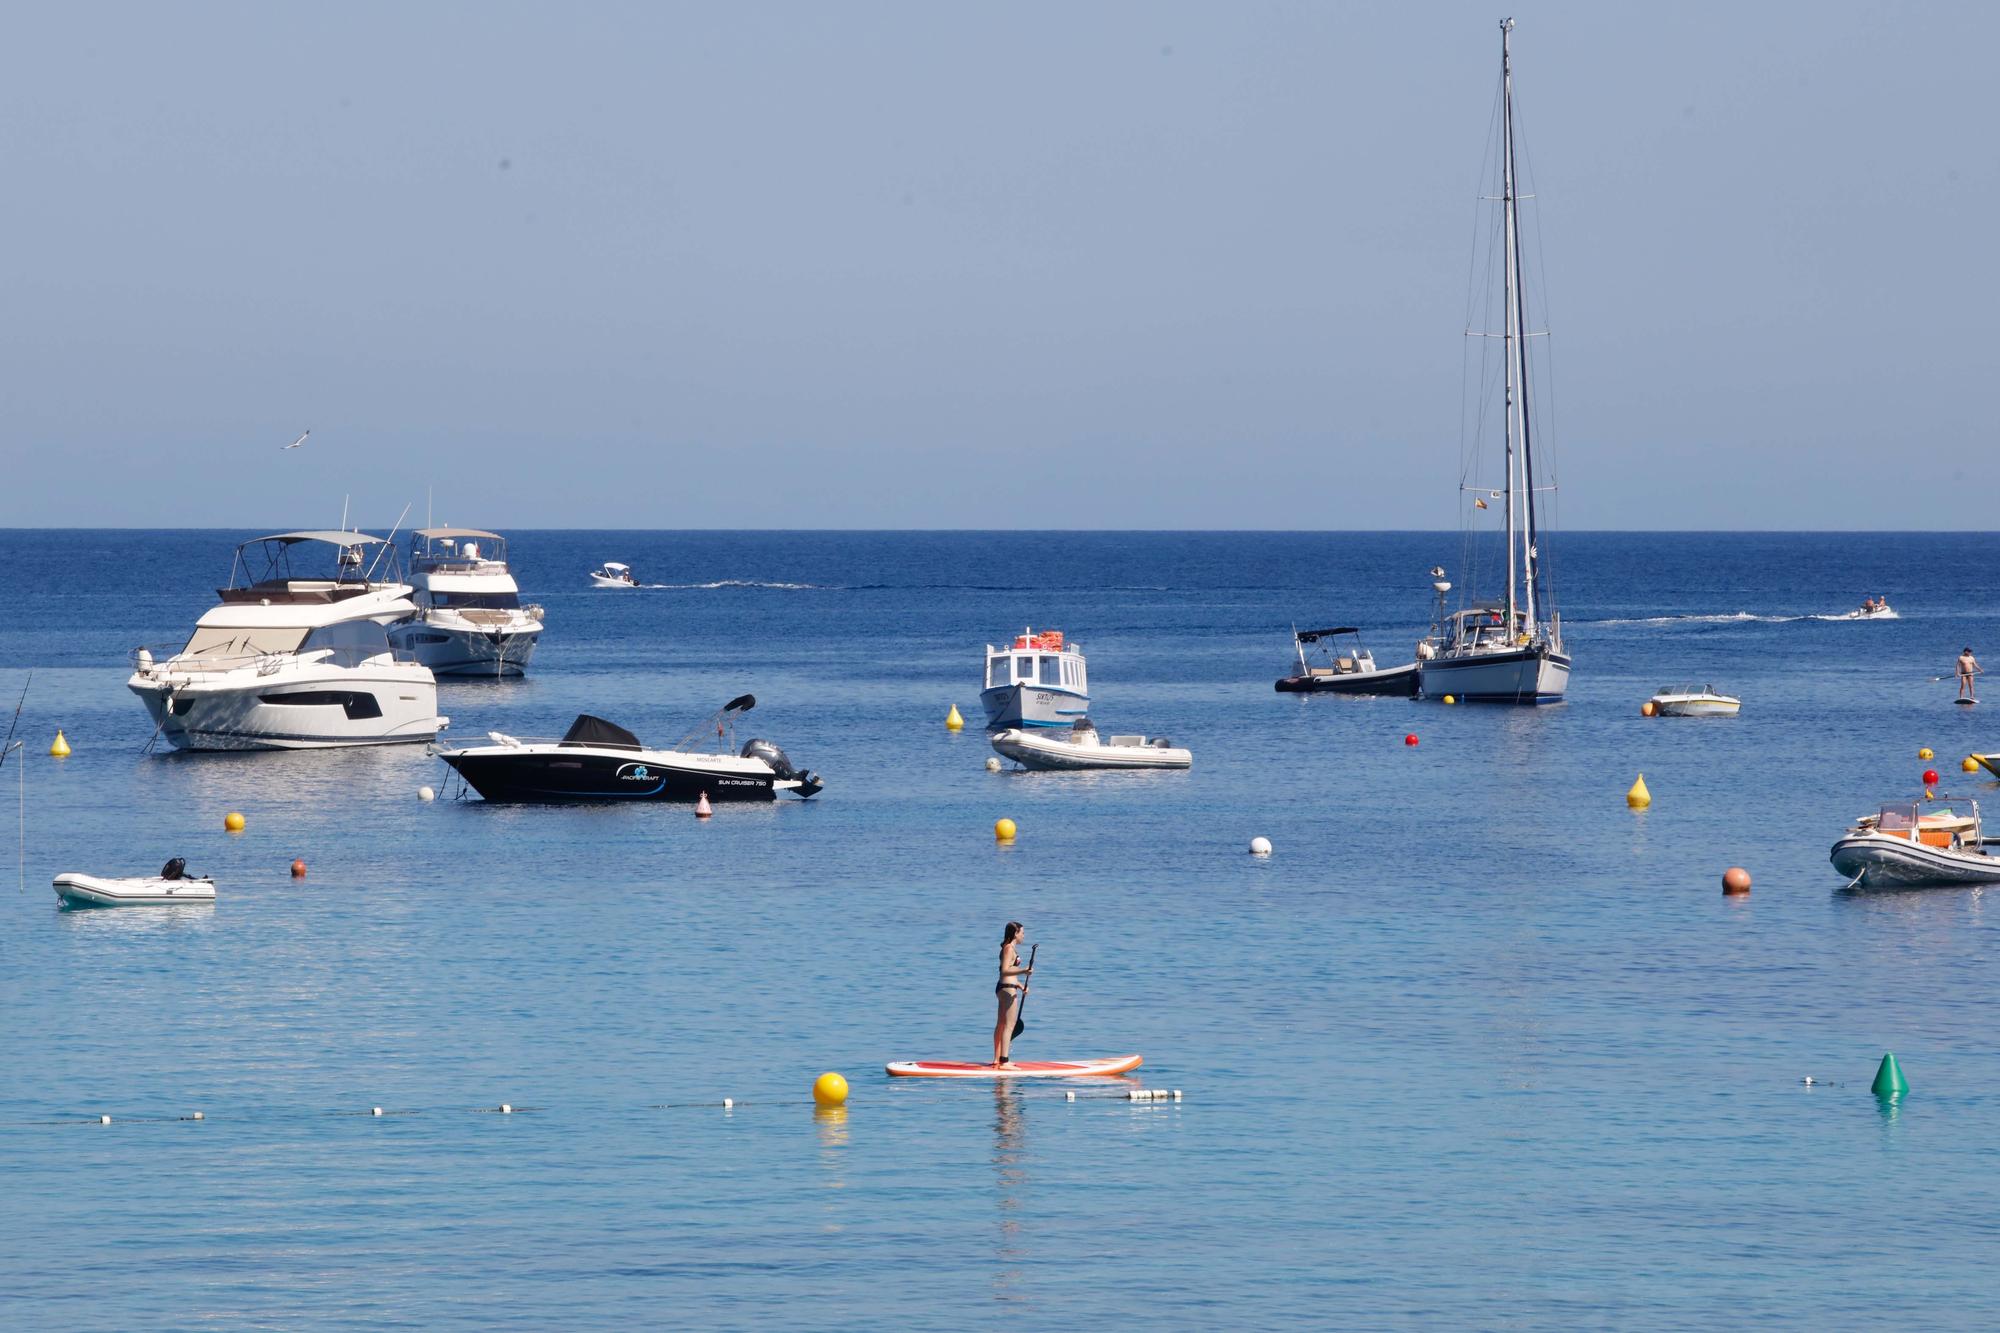 Turismo en Ibiza: Portinatx, destino para adultos